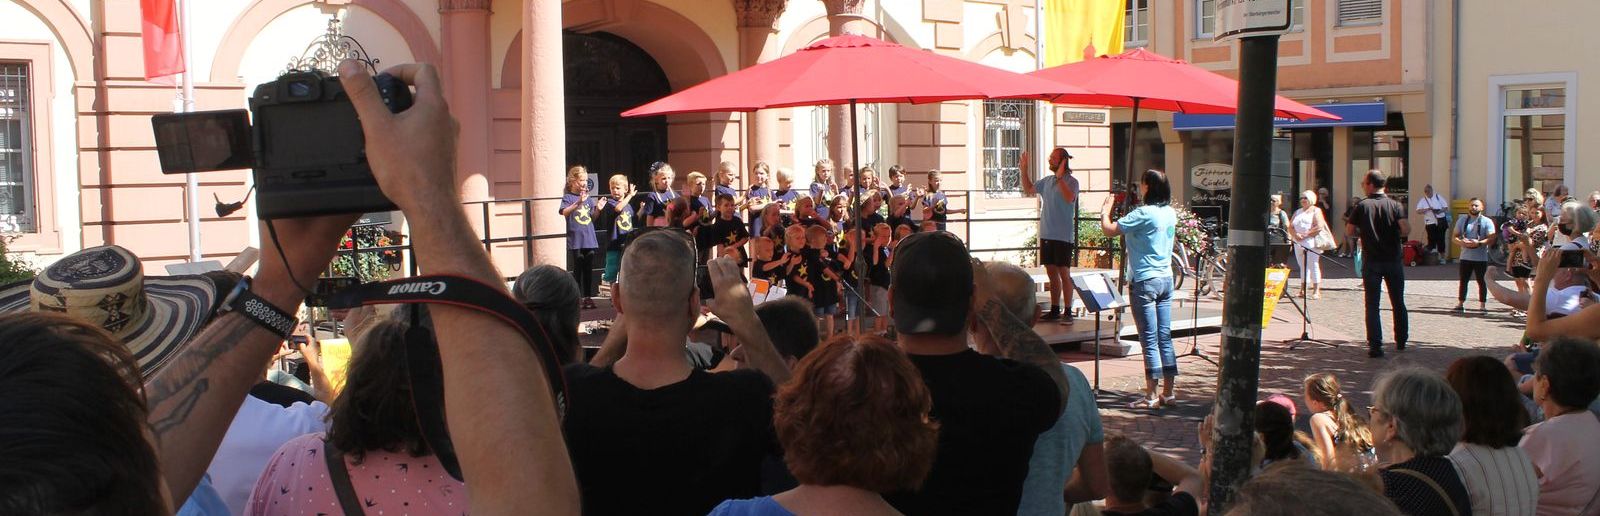 La chorale chante devant la mairie historique de Rastatt, les spectateurs tournent en rond